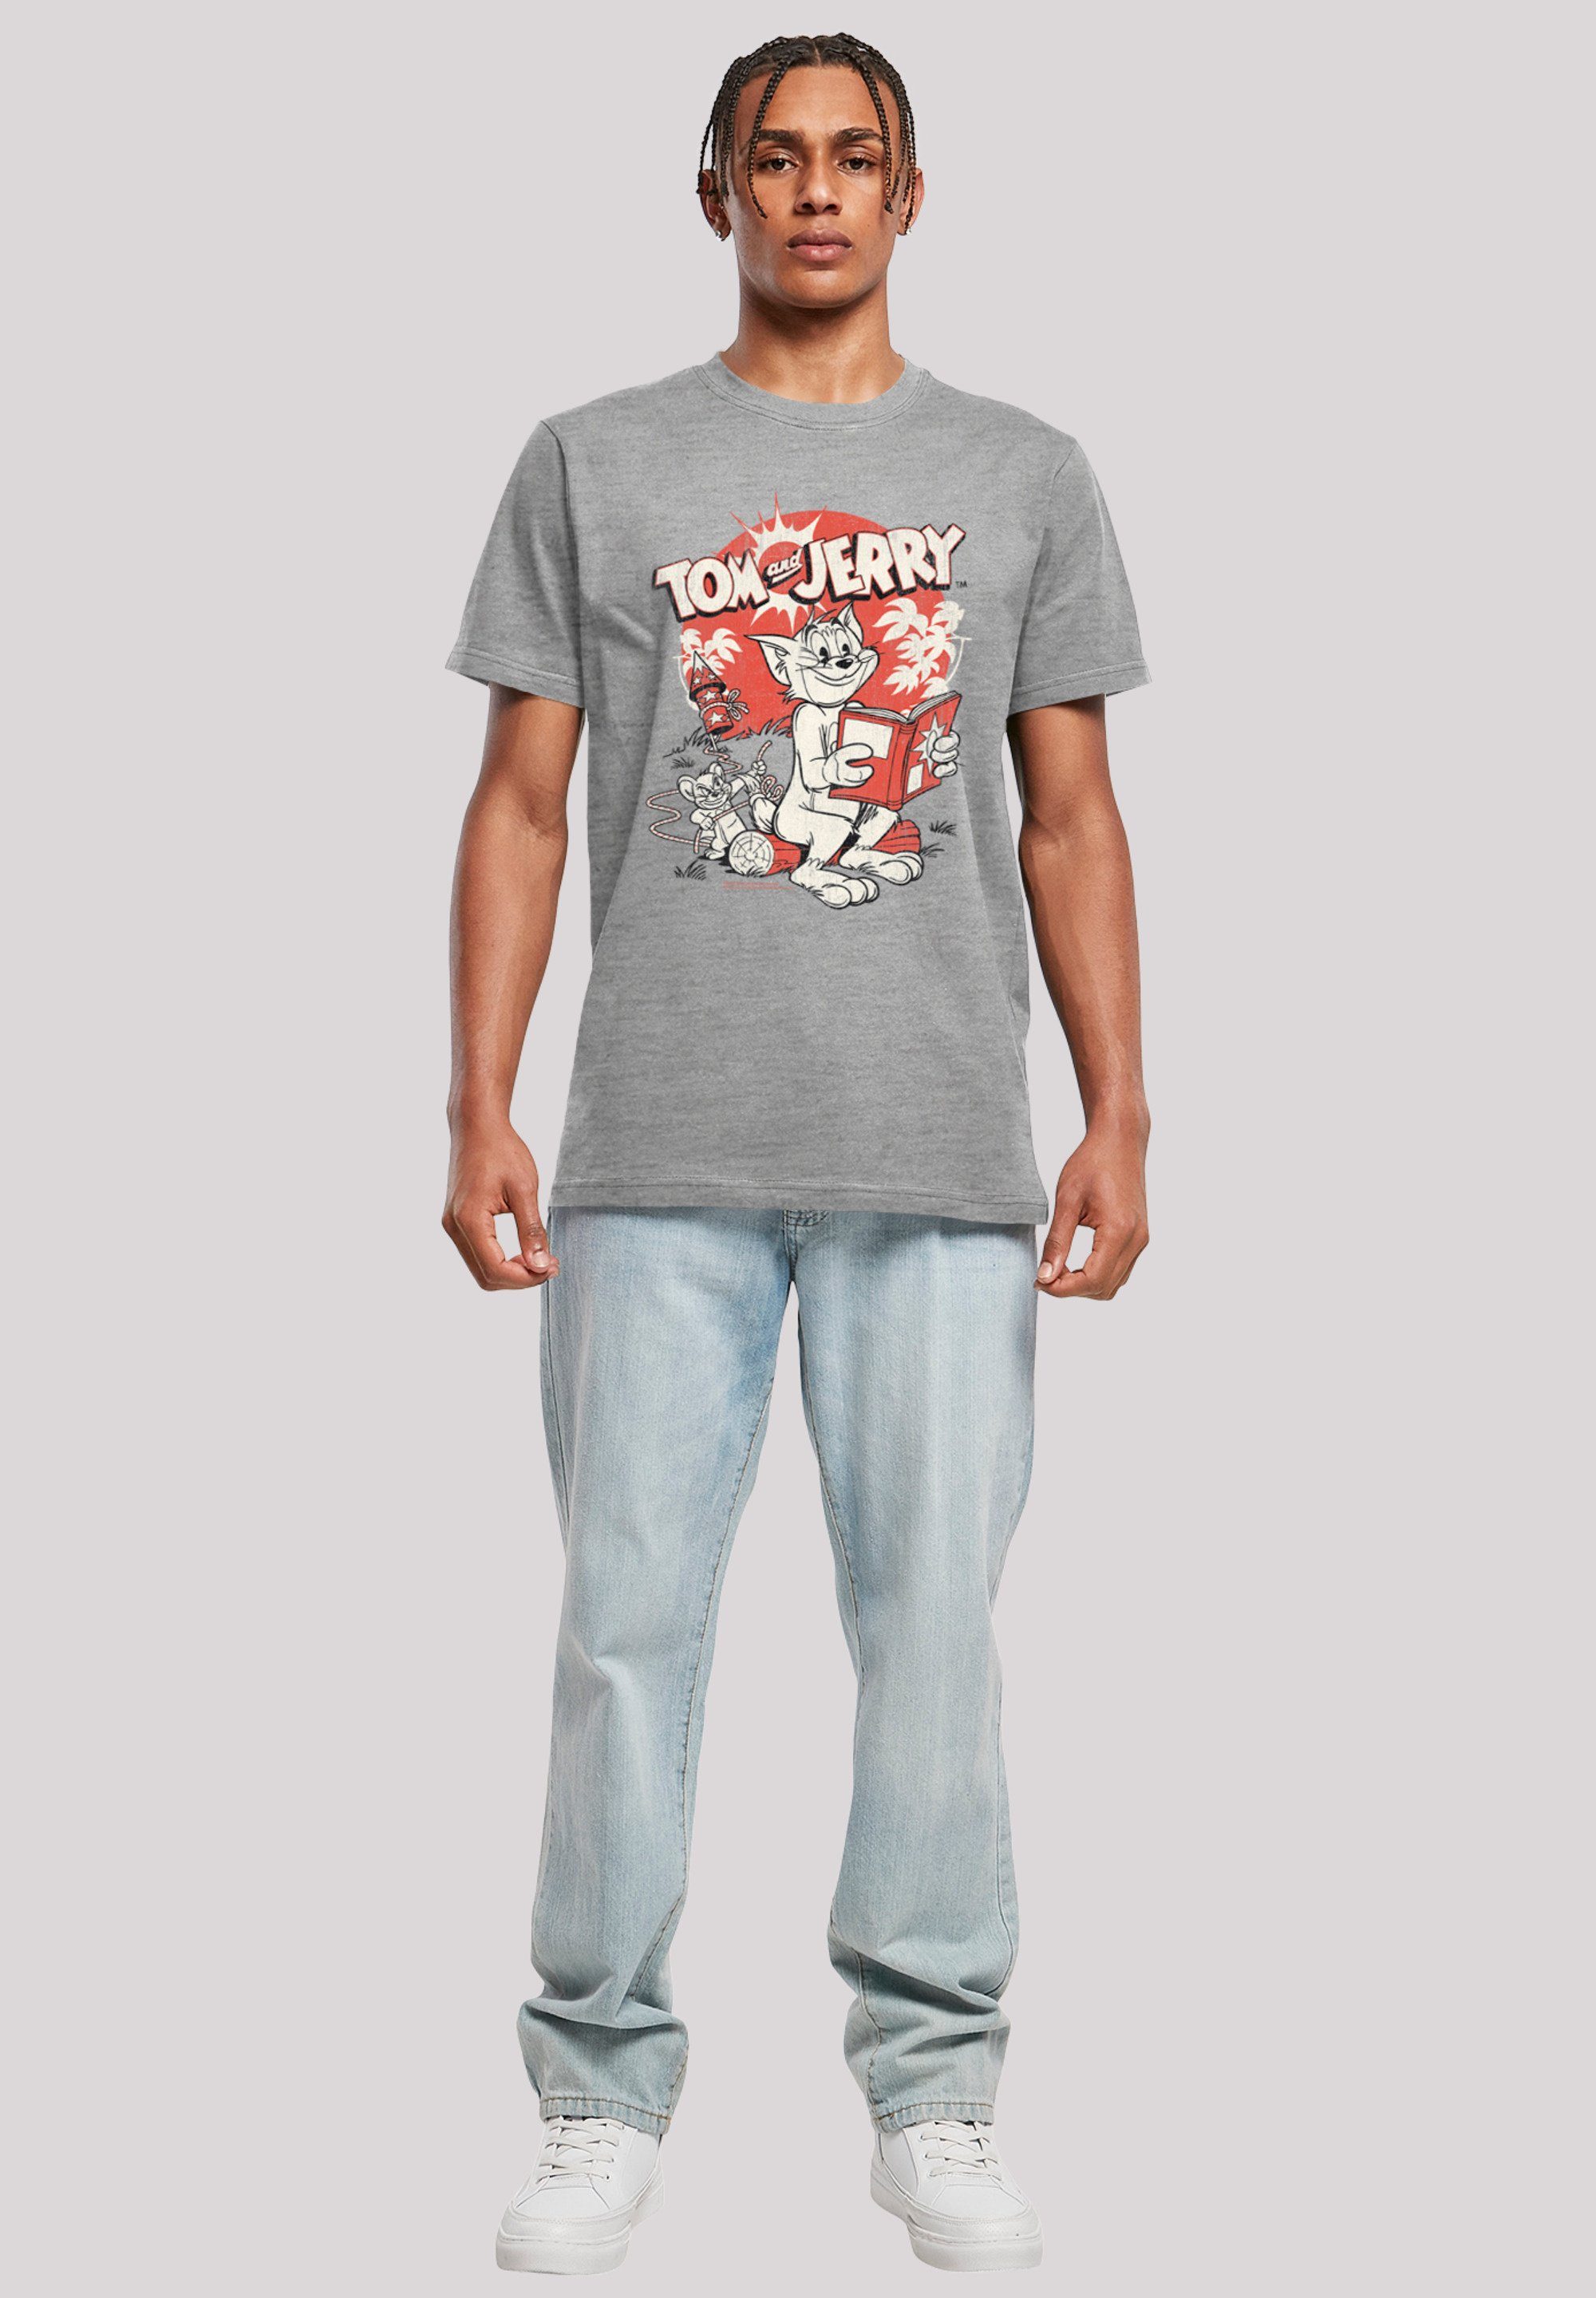 Tom Jerry F4NT4STIC heather Rocket Herren,Premium und T-Shirt Prank Merch,Regular-Fit,Basic,Bedruckt grey